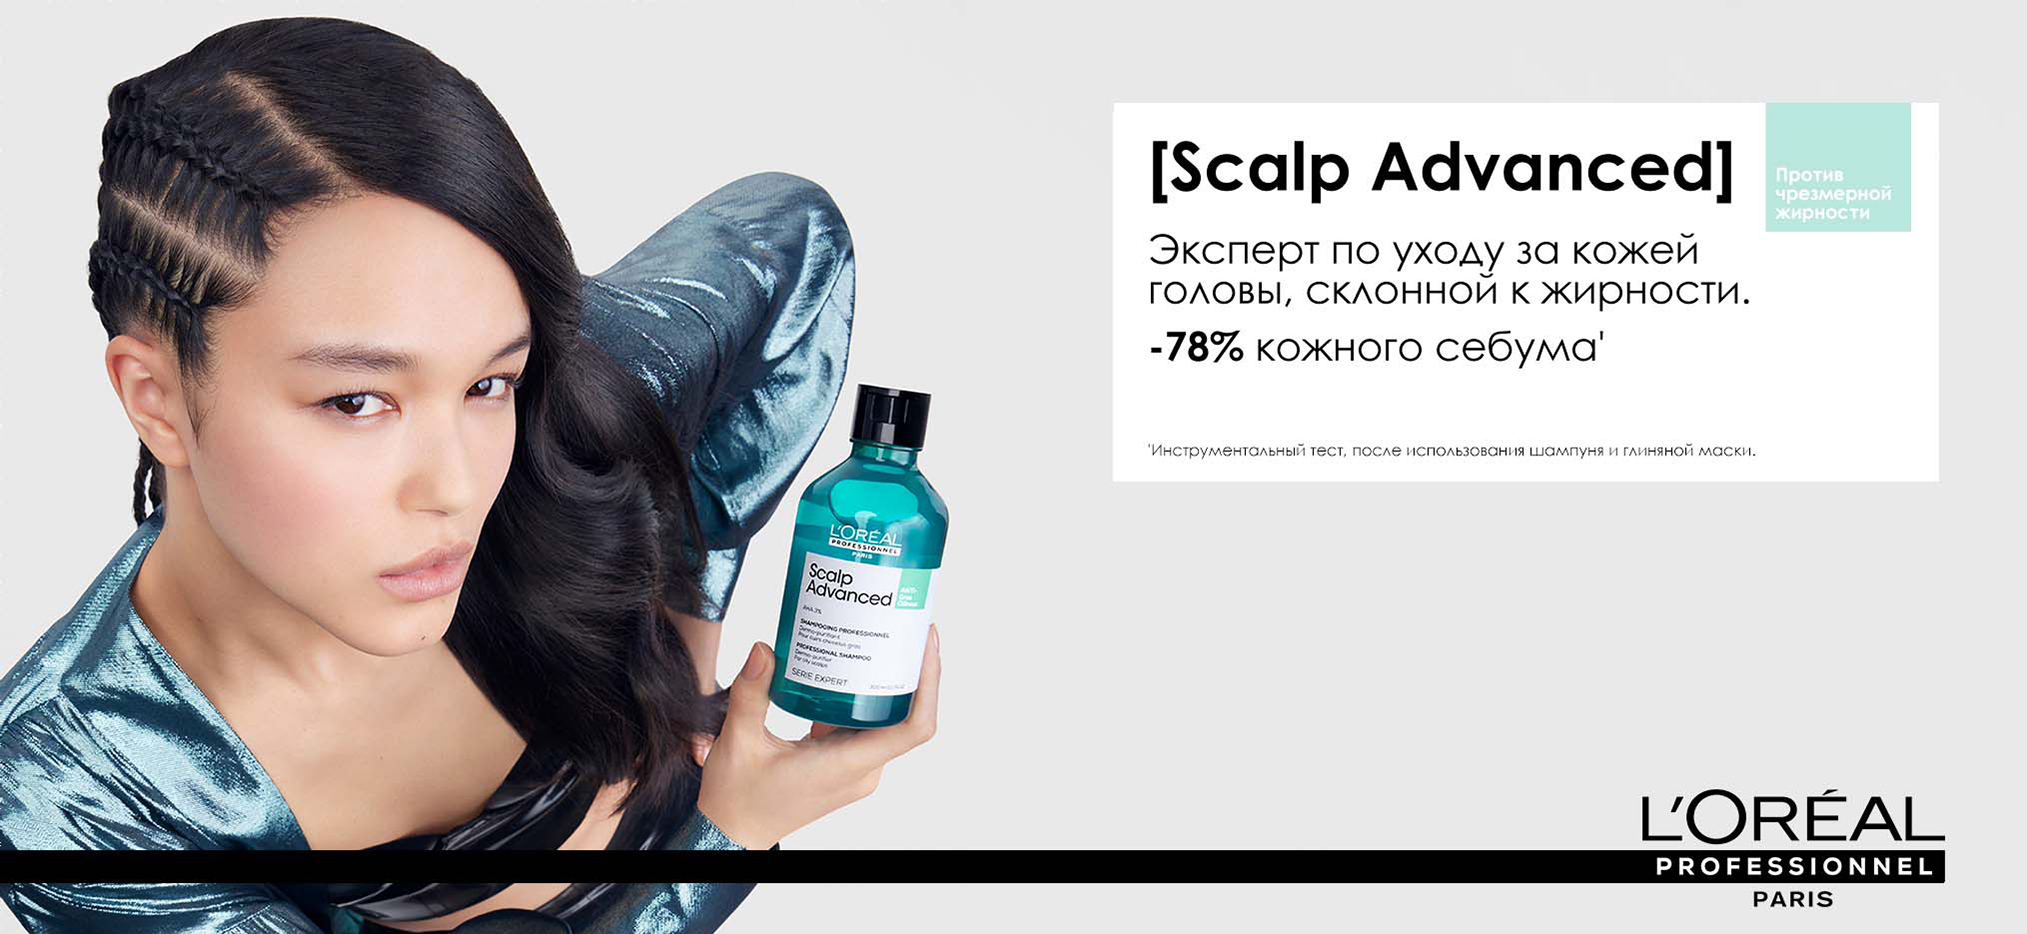 Профессиональный очищающий шампунь для склонных к жирности волос - L'Oreal Professionnel Scalp Advanced Anti-Oiliness Shampoo